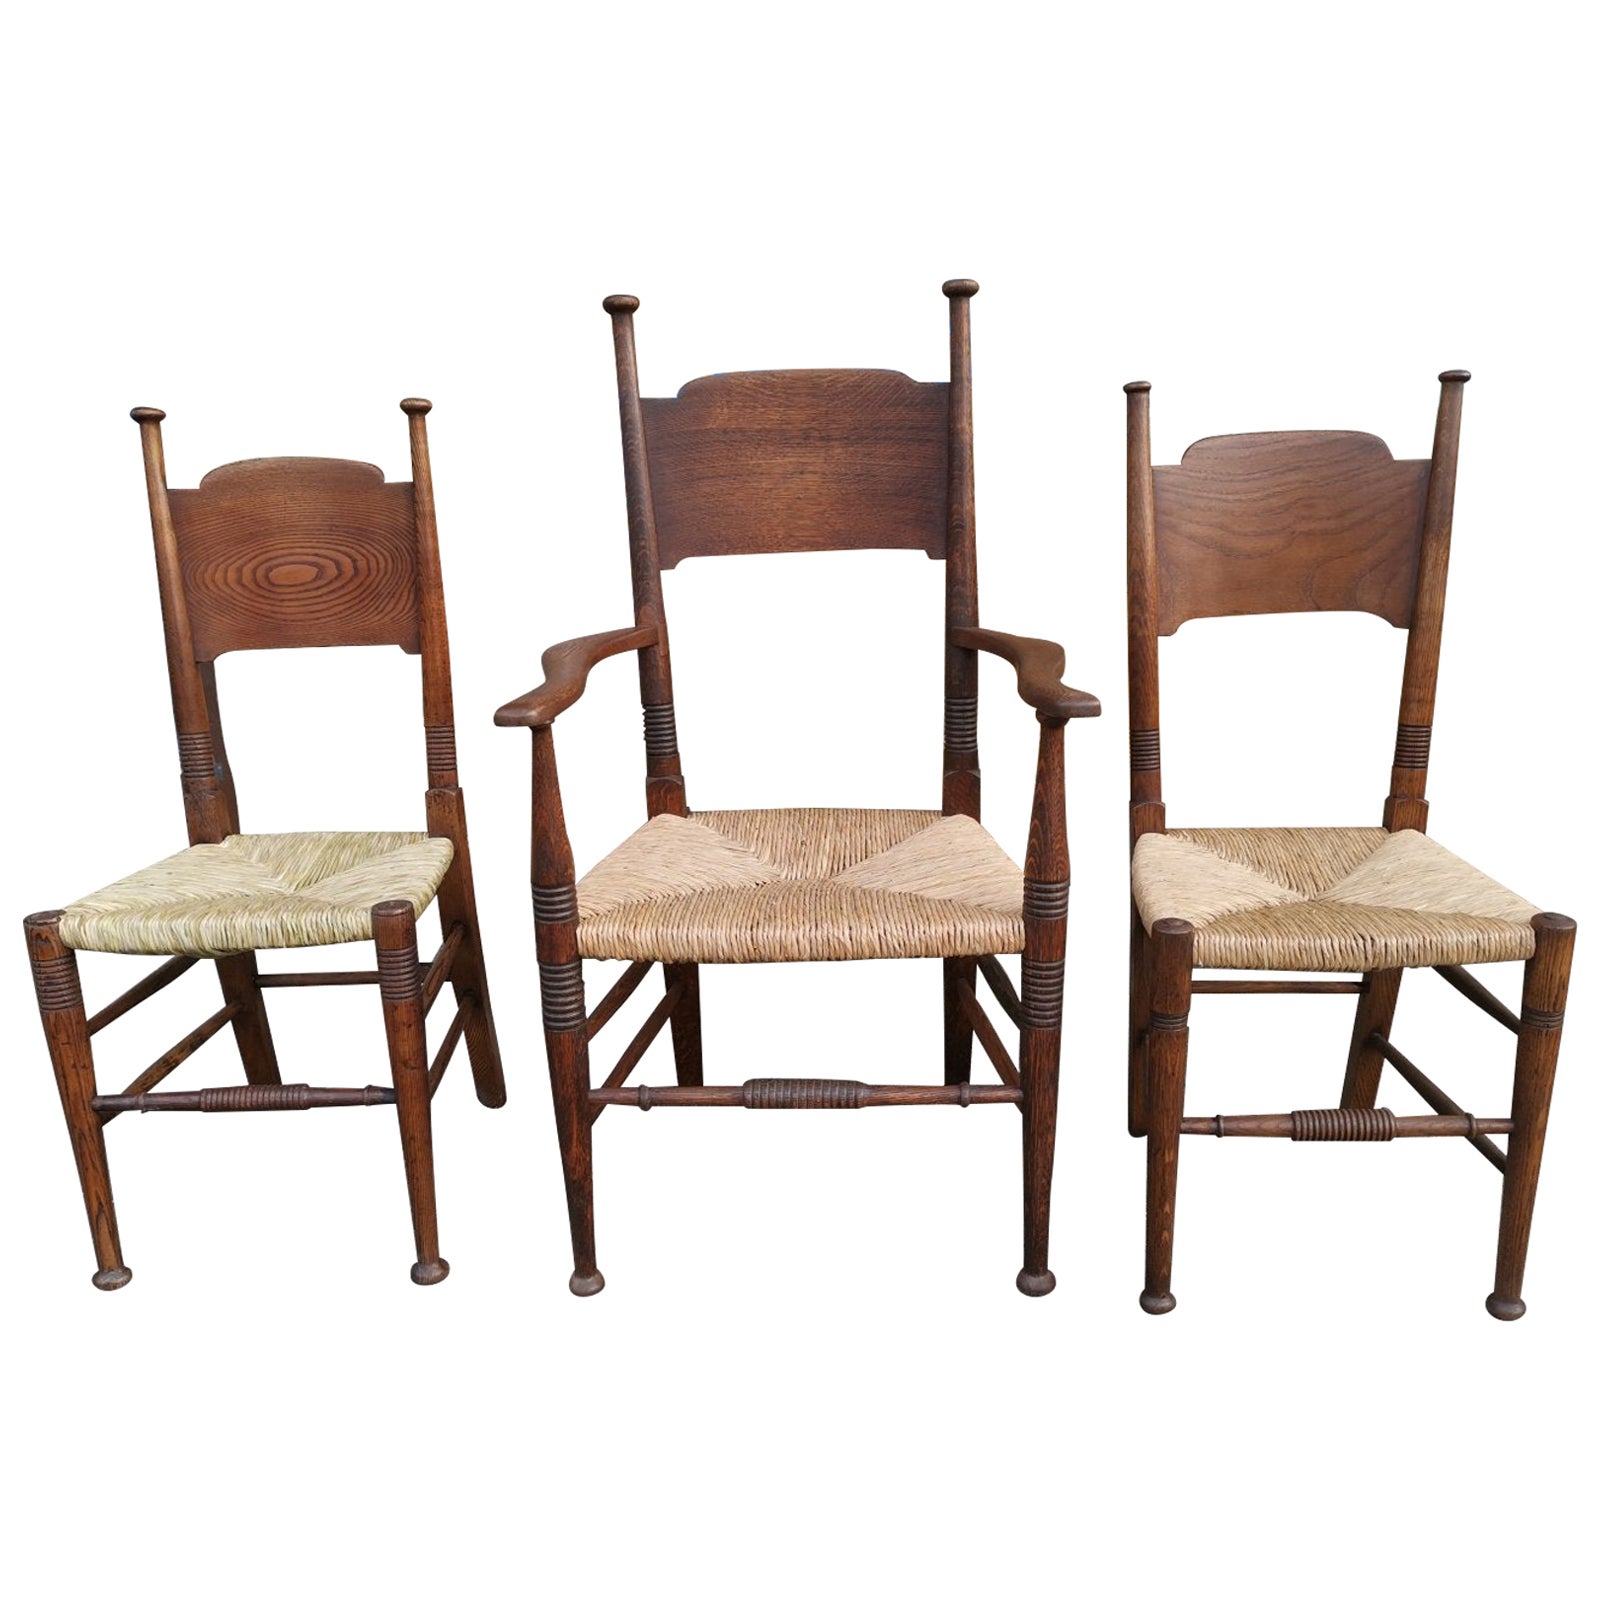 Fauteuil Arts & Crafts et deux chaises latérales différenciées Liberty & Co, William Birch